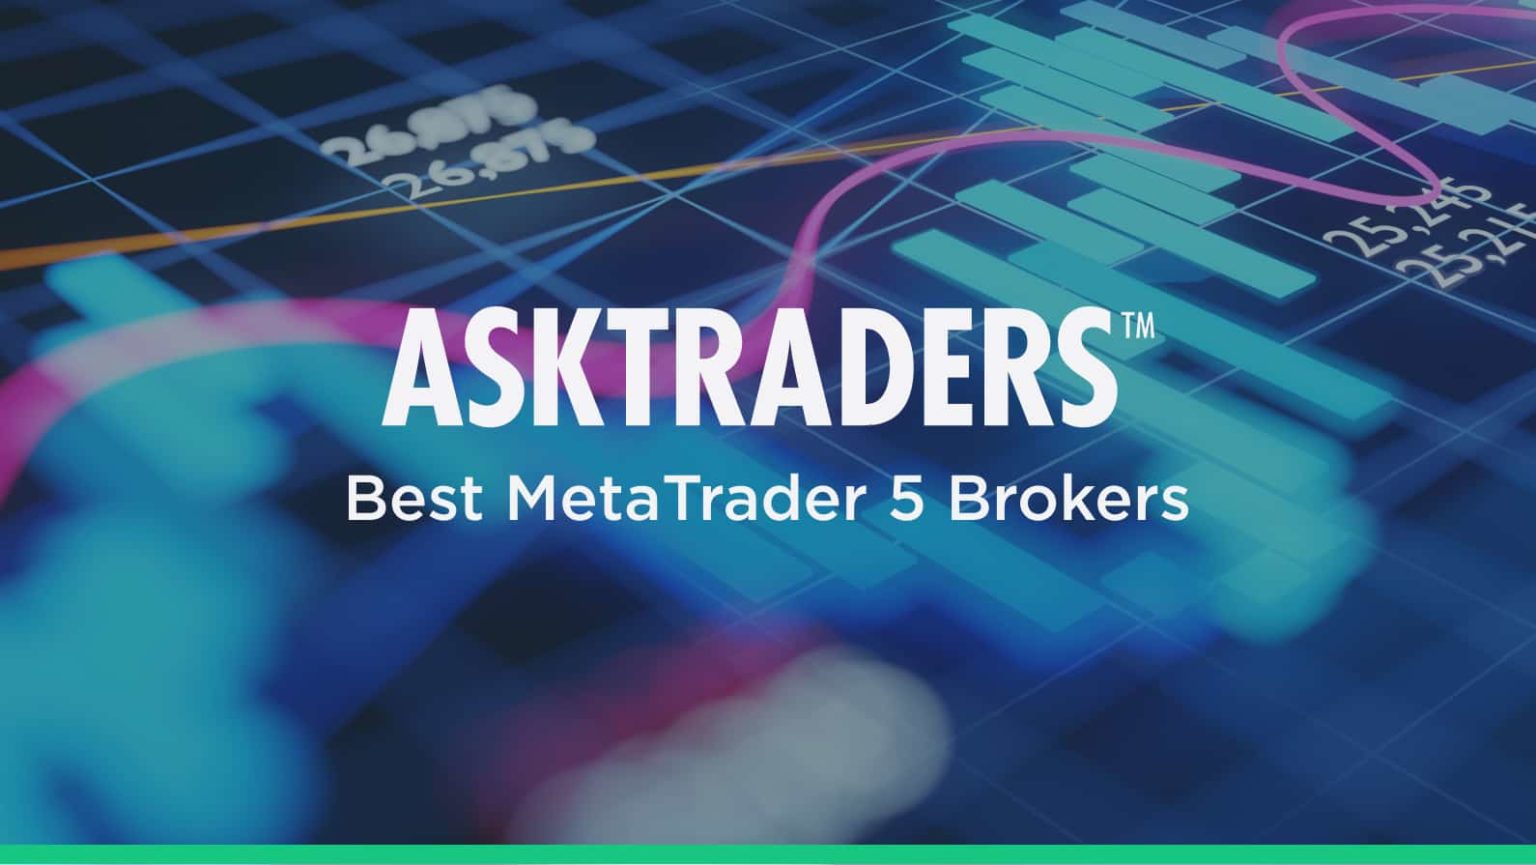 5 Best MT5 Brokers (2020) - MetaTrader 5 Brokers ...